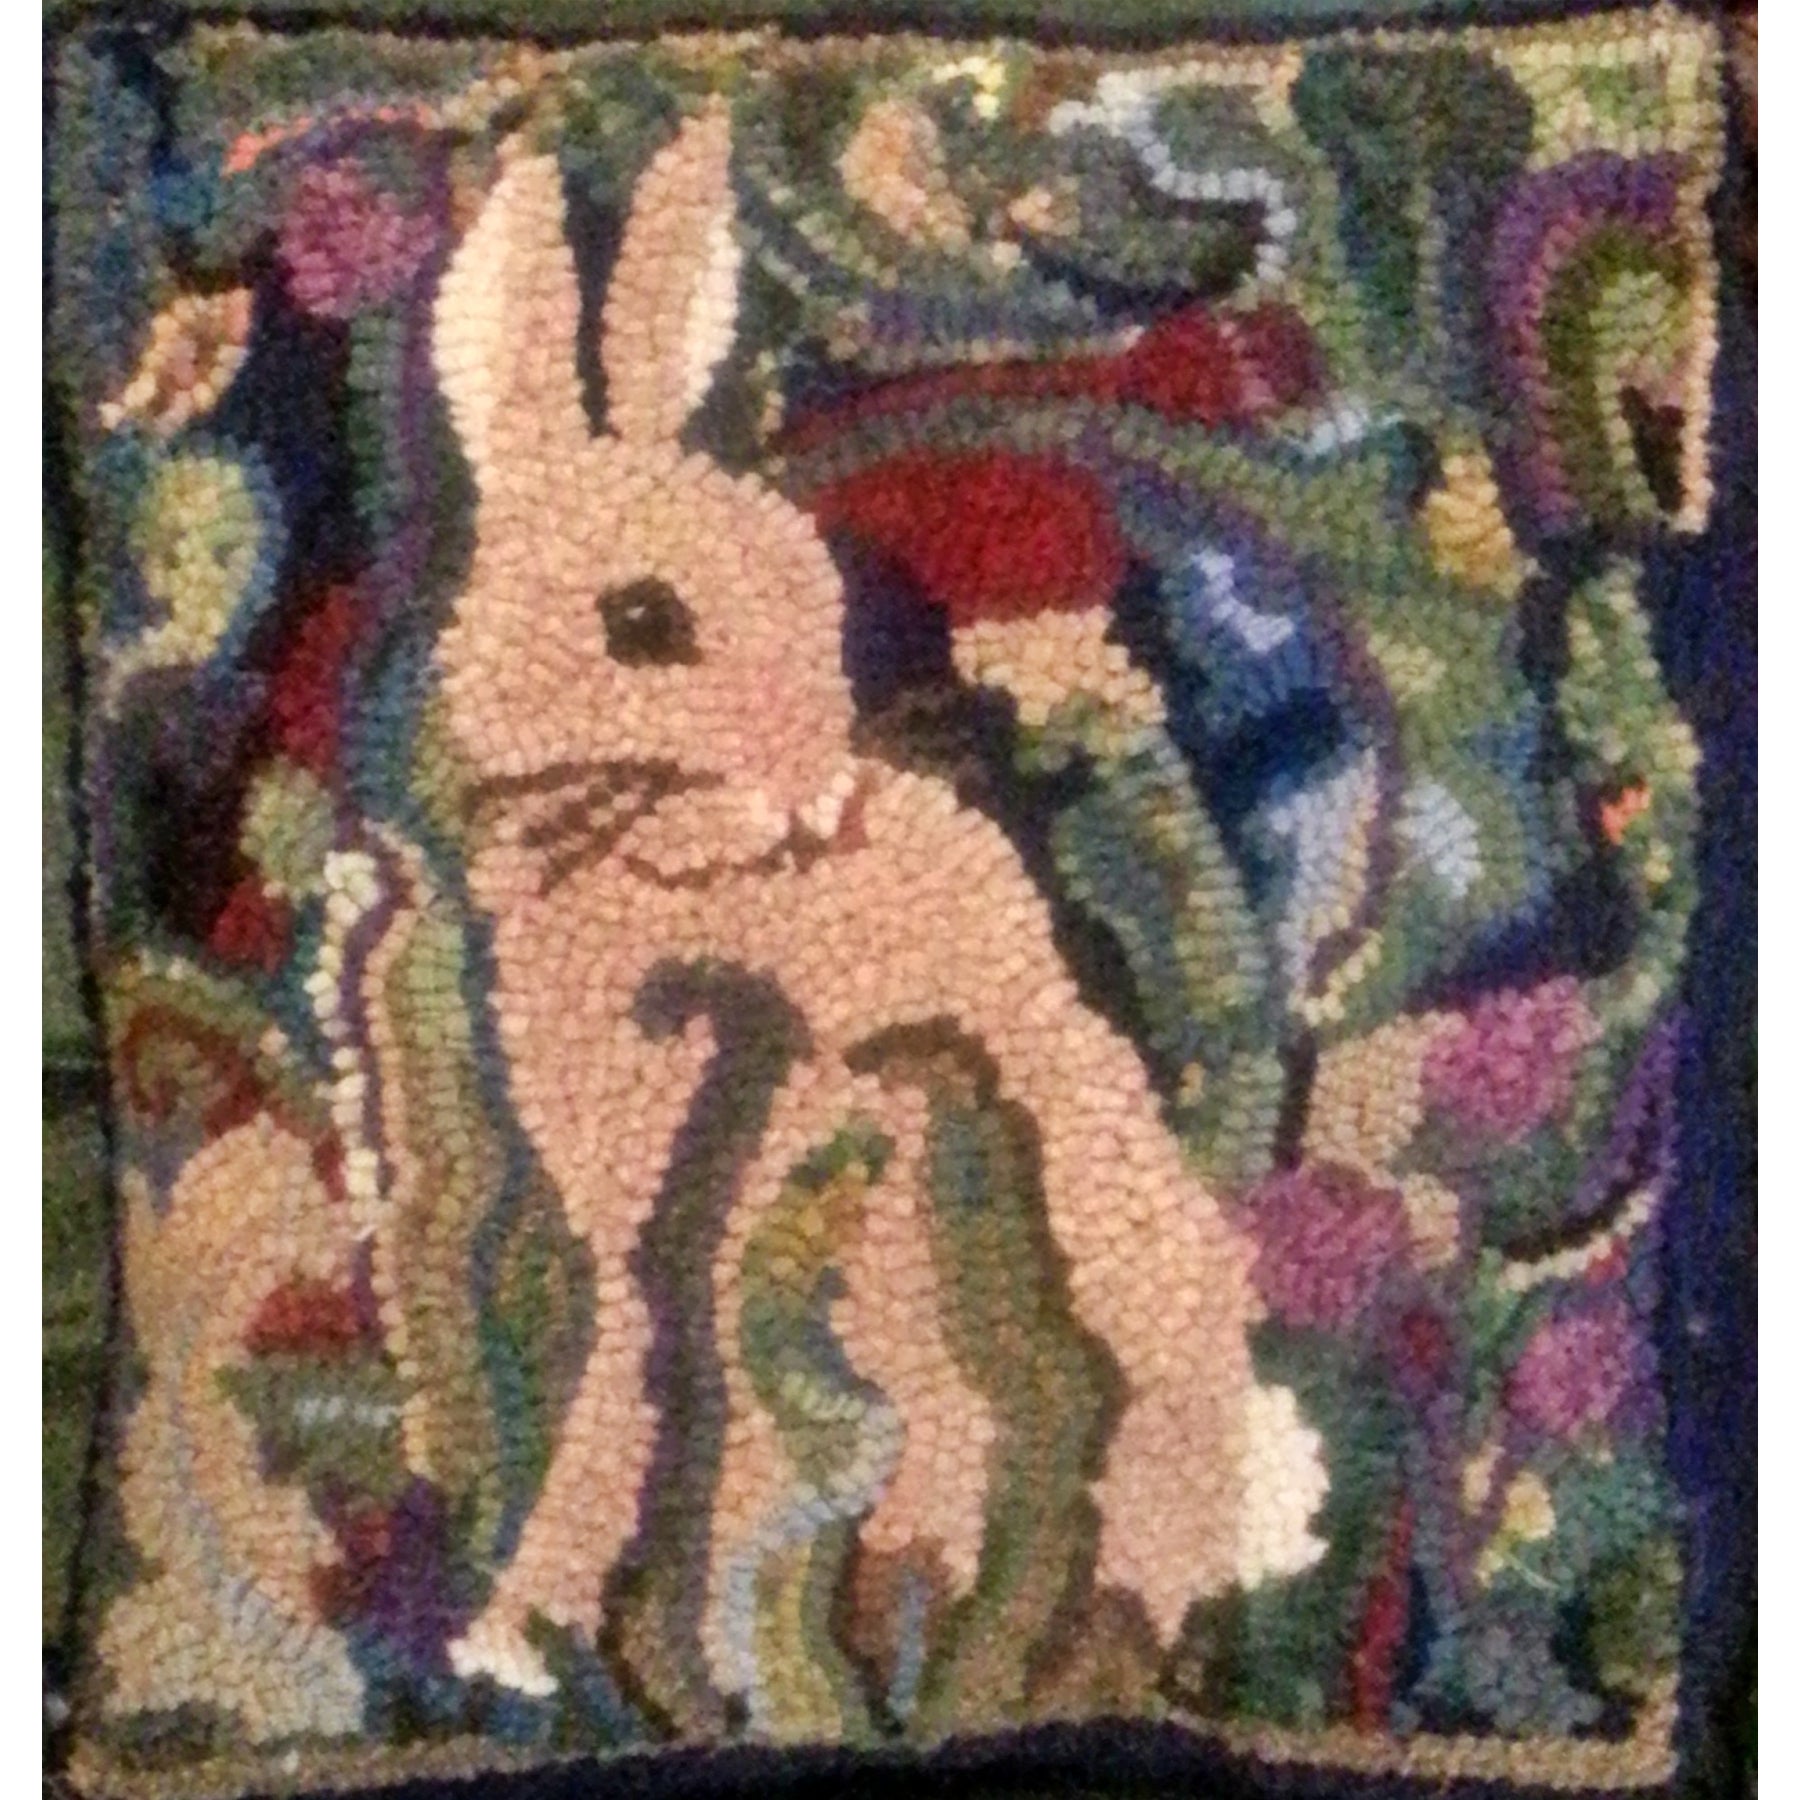 Morris Bunny, rug hooked by Kim Adams